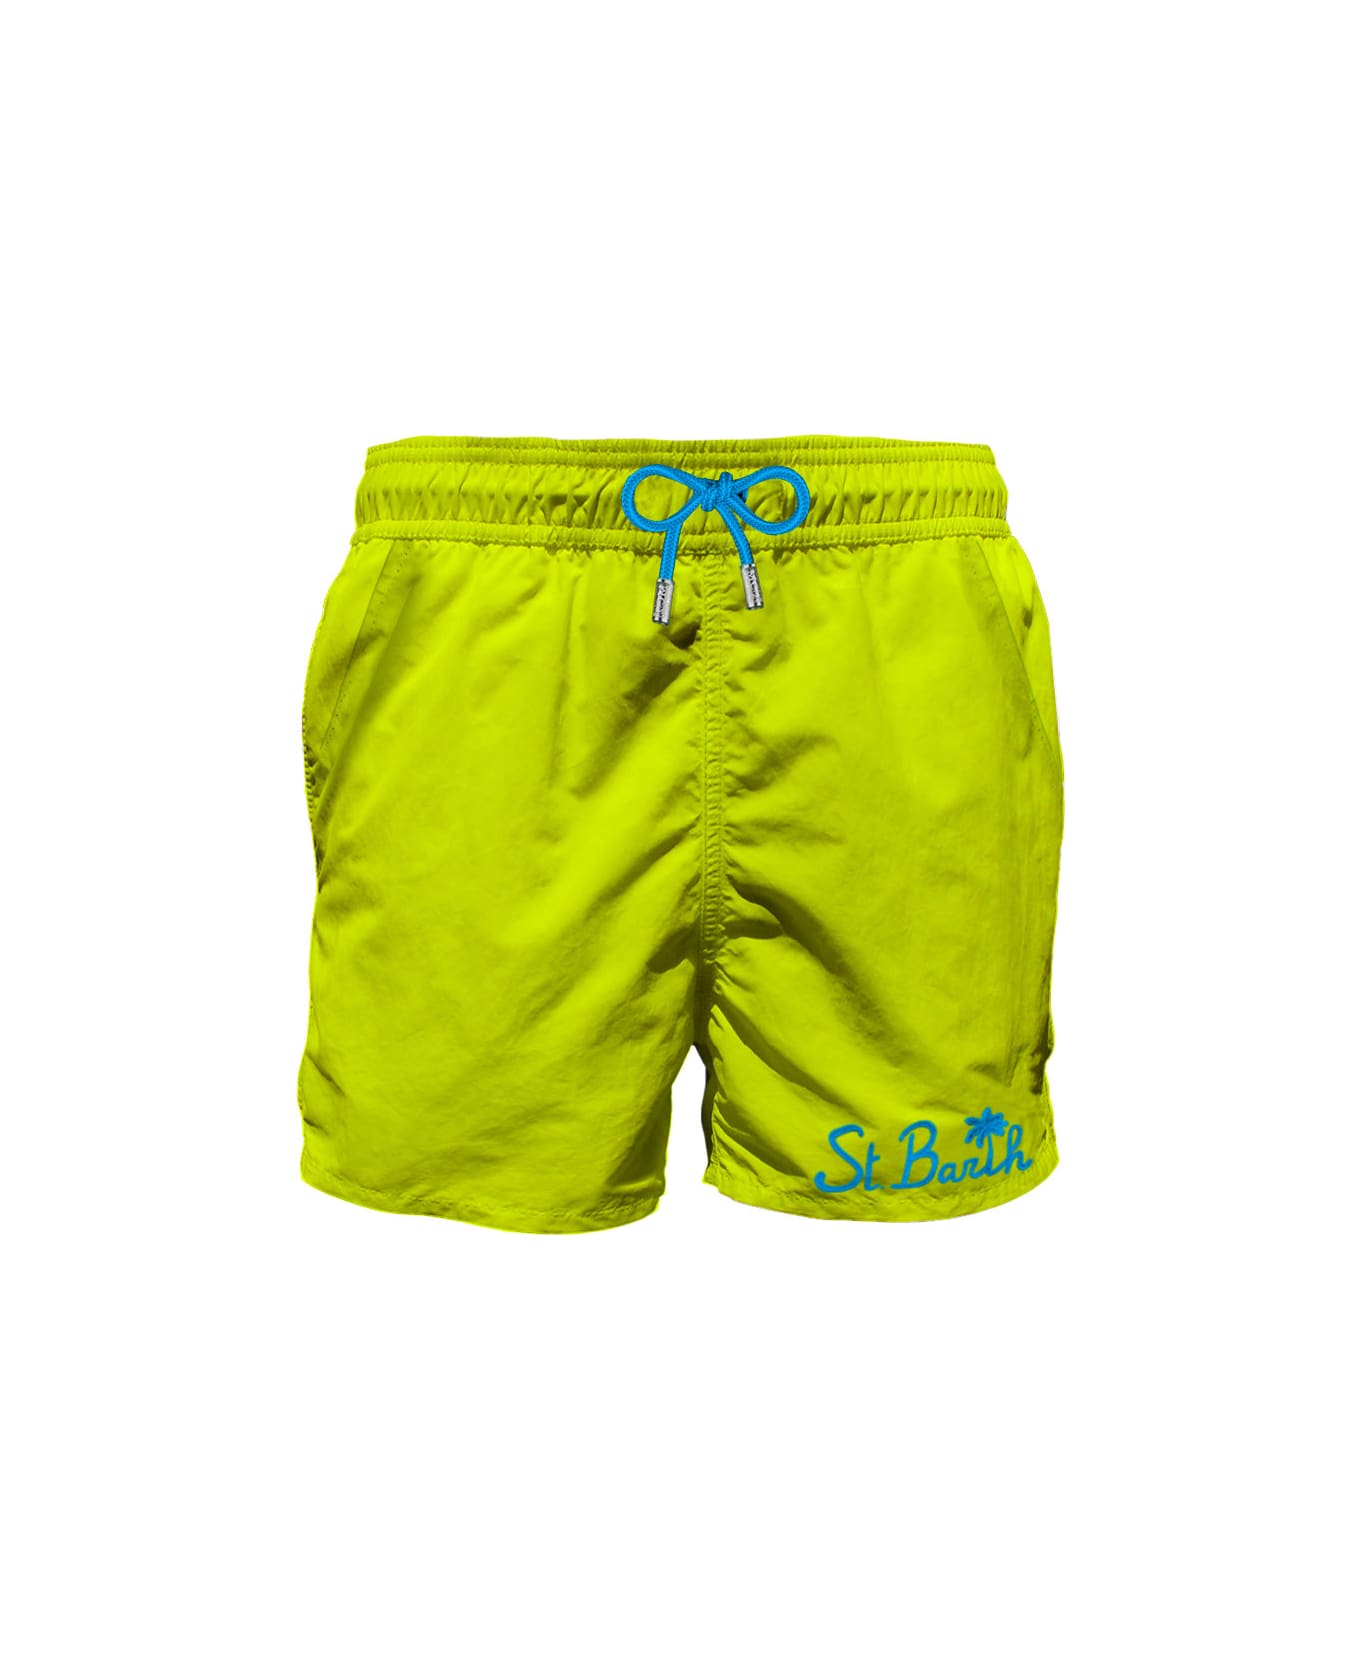 MC2 Saint Barth Man Fluo Yellow Swim Shorts With Pocket - YELLOW スイムトランクス